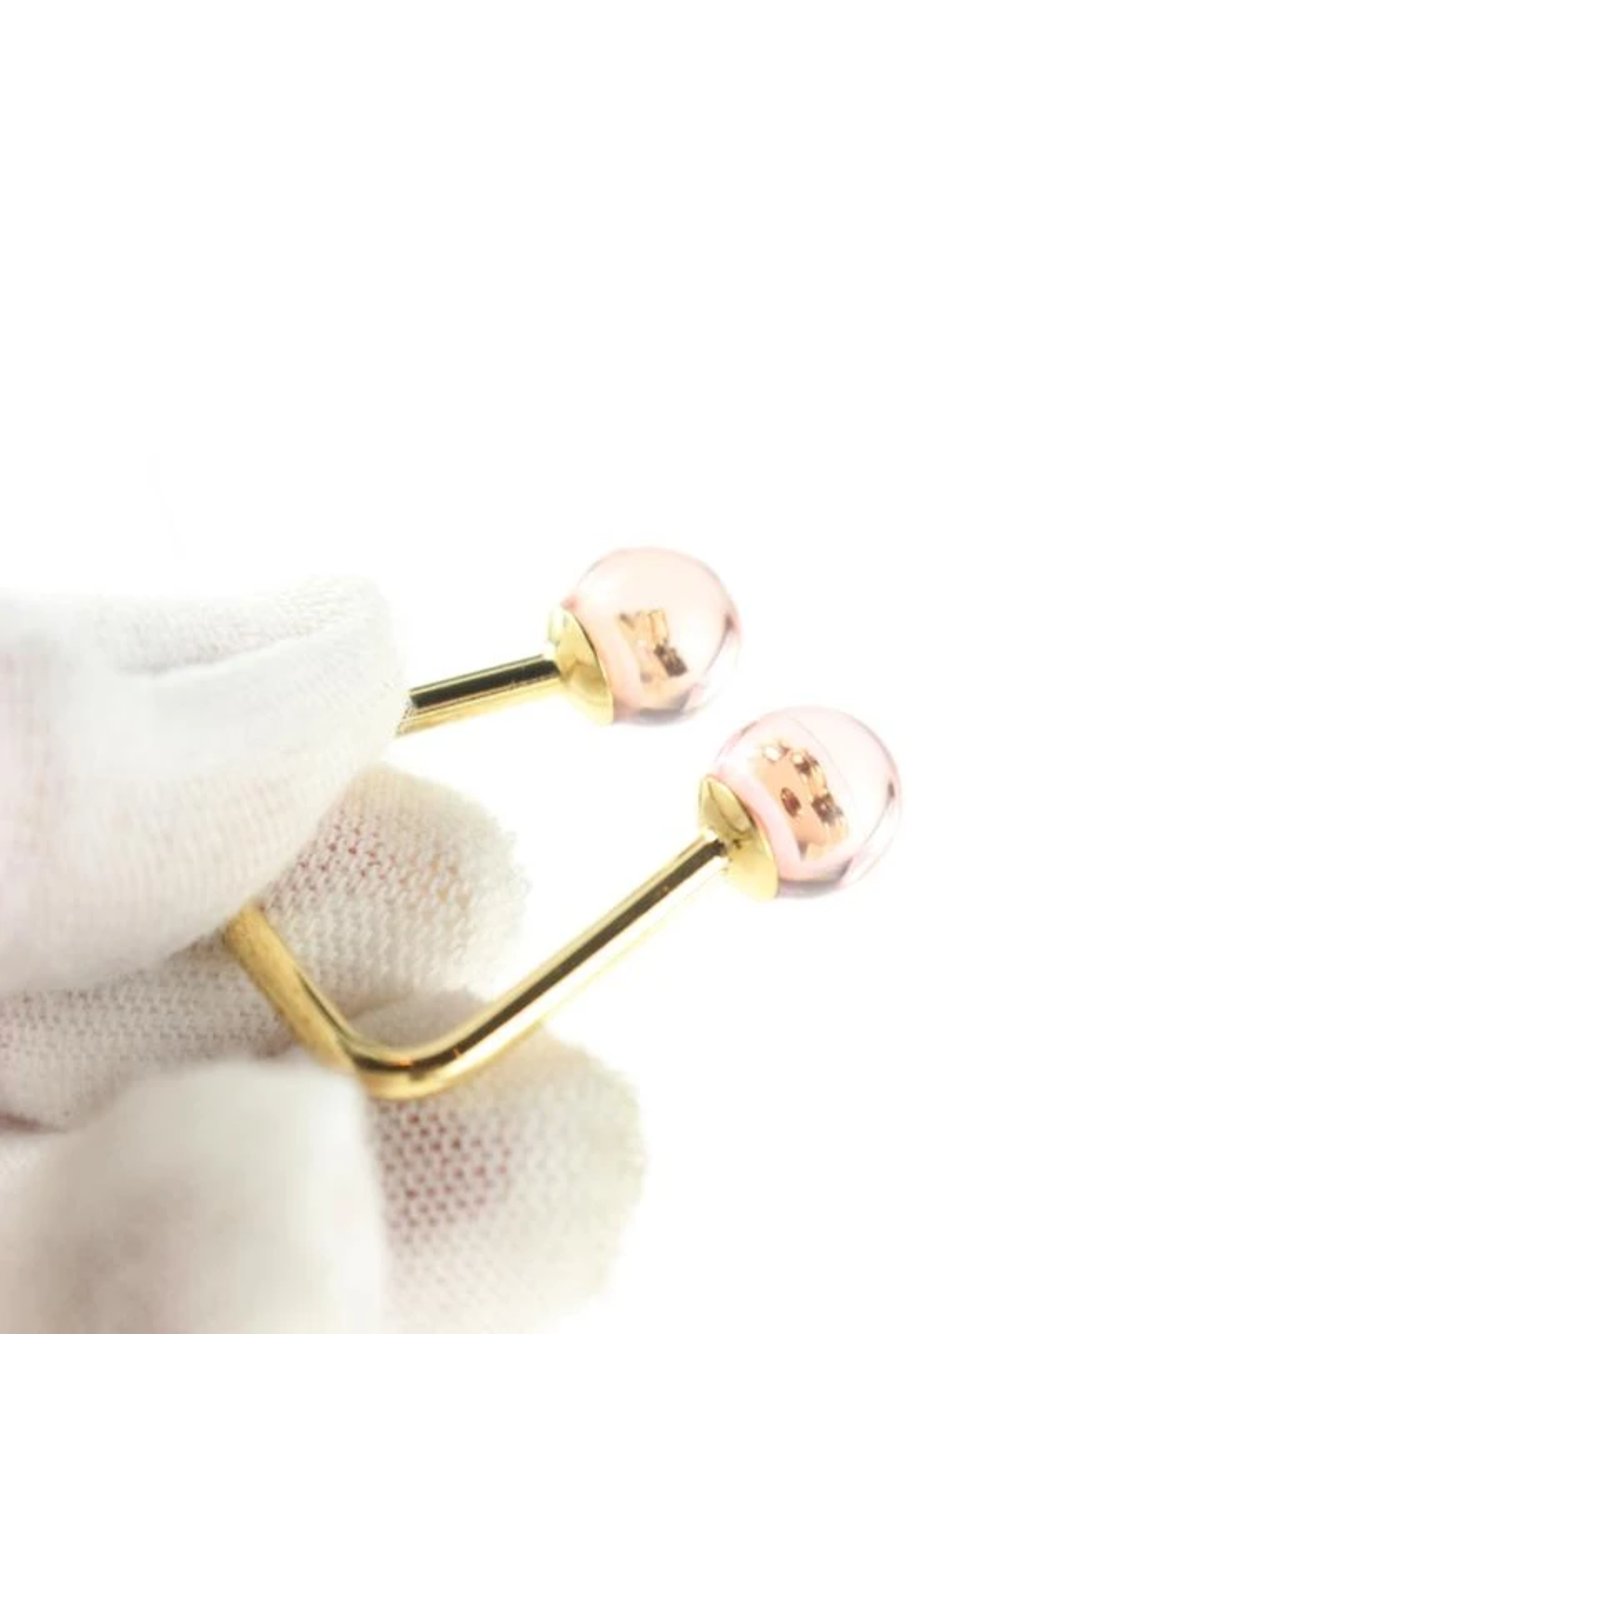 Louis Vuitton Gold Inclusion Fleur Bubble Ring White gold ref